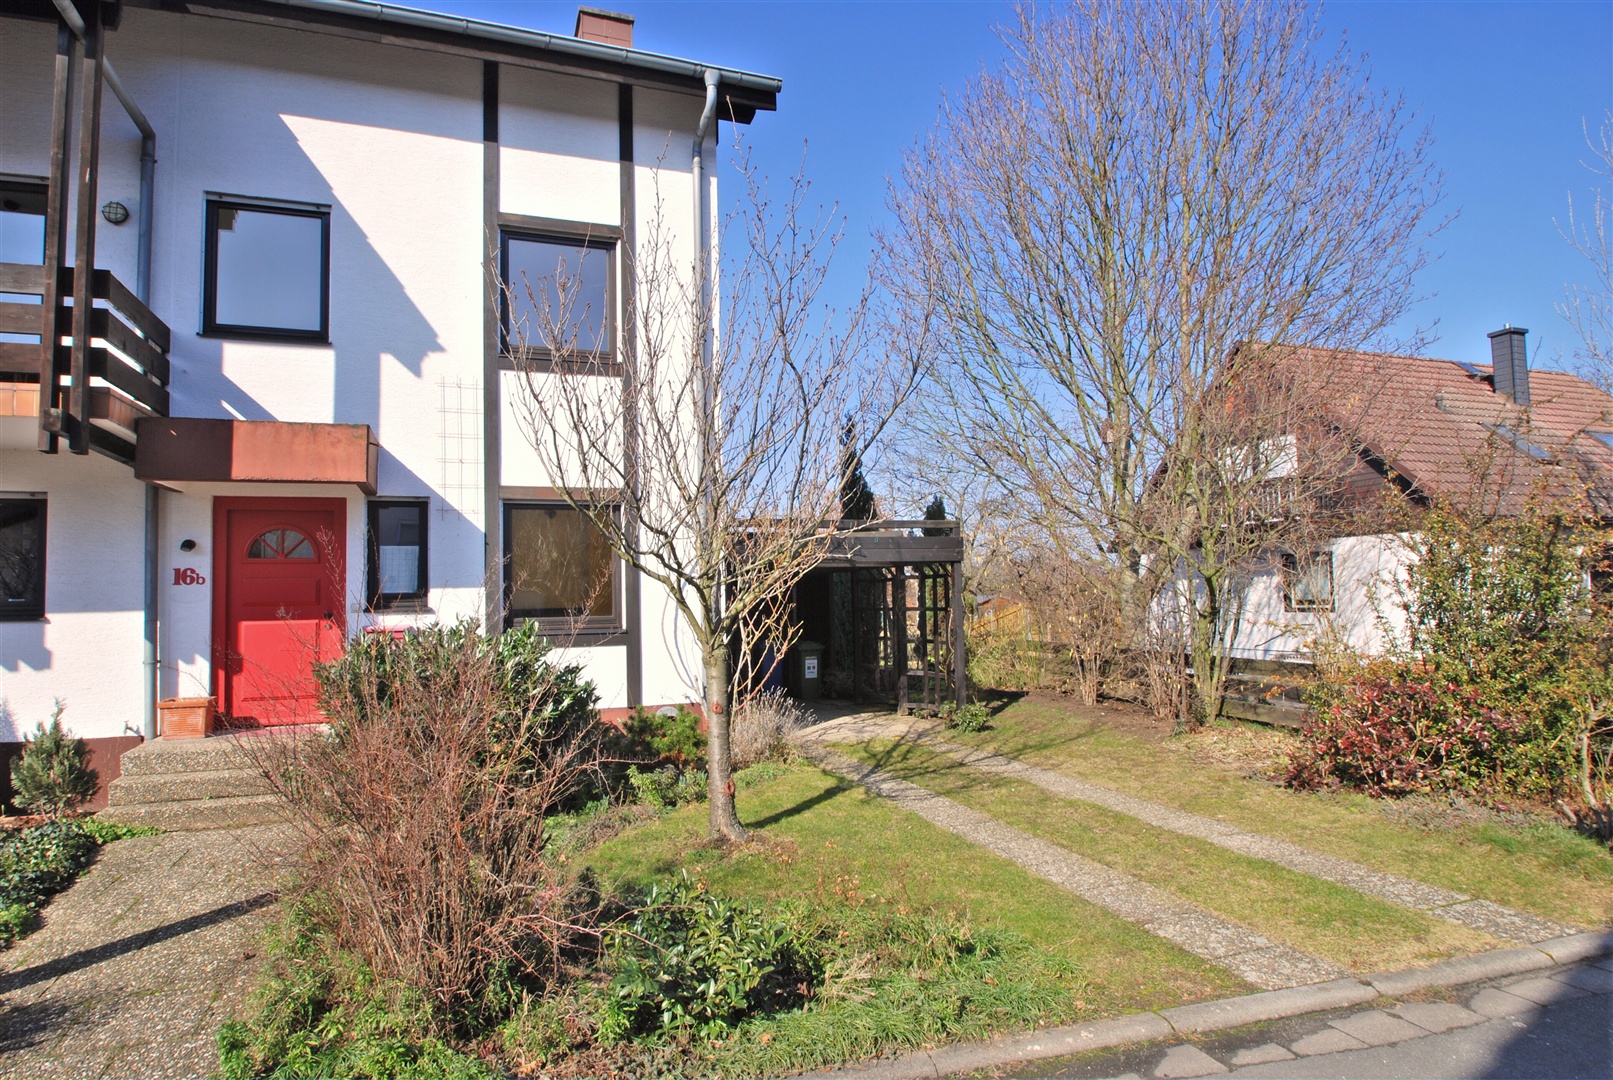 schöner, großzügiger vorgarten mit carport direkt am haus - Oliver Reifferscheid - Immobilienmakler Darmstadt